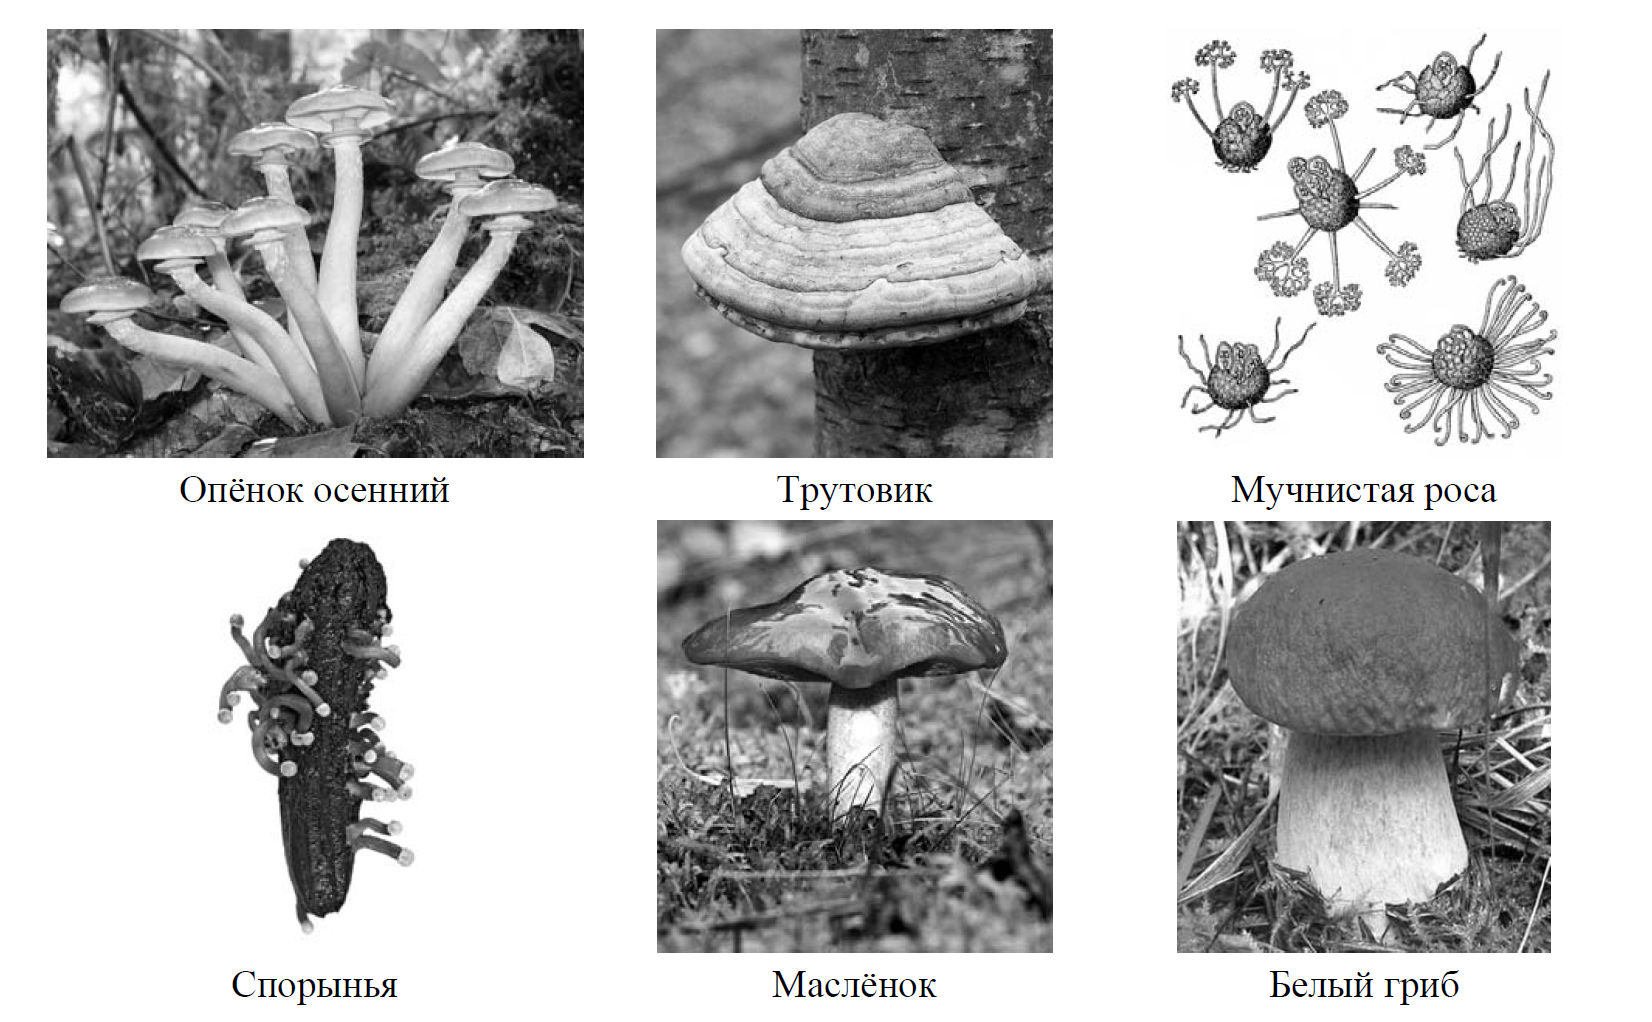 Рассмотрите изображение шести организмов впр. Две группы грибов. Разделите грибы на группы по три представителя. Грибы 7 класс.